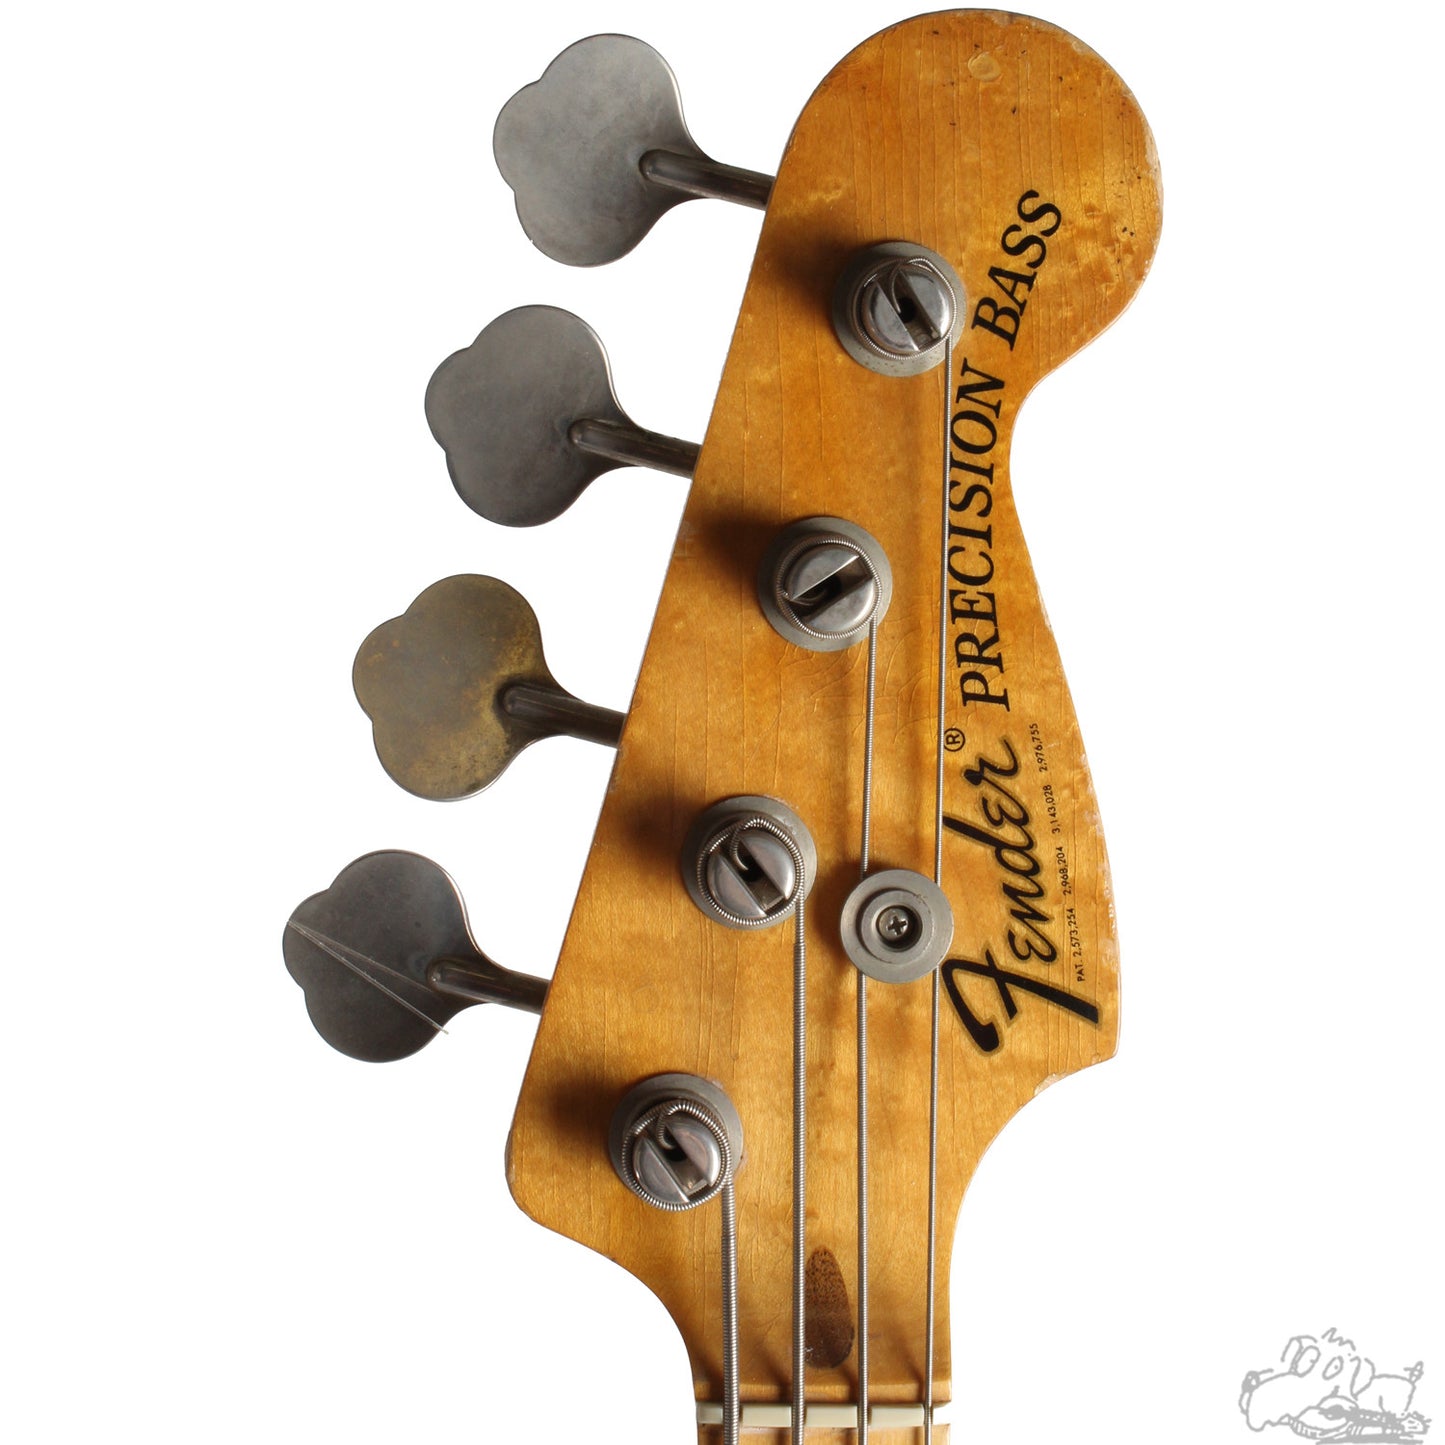 1975 Fender Precision Bass